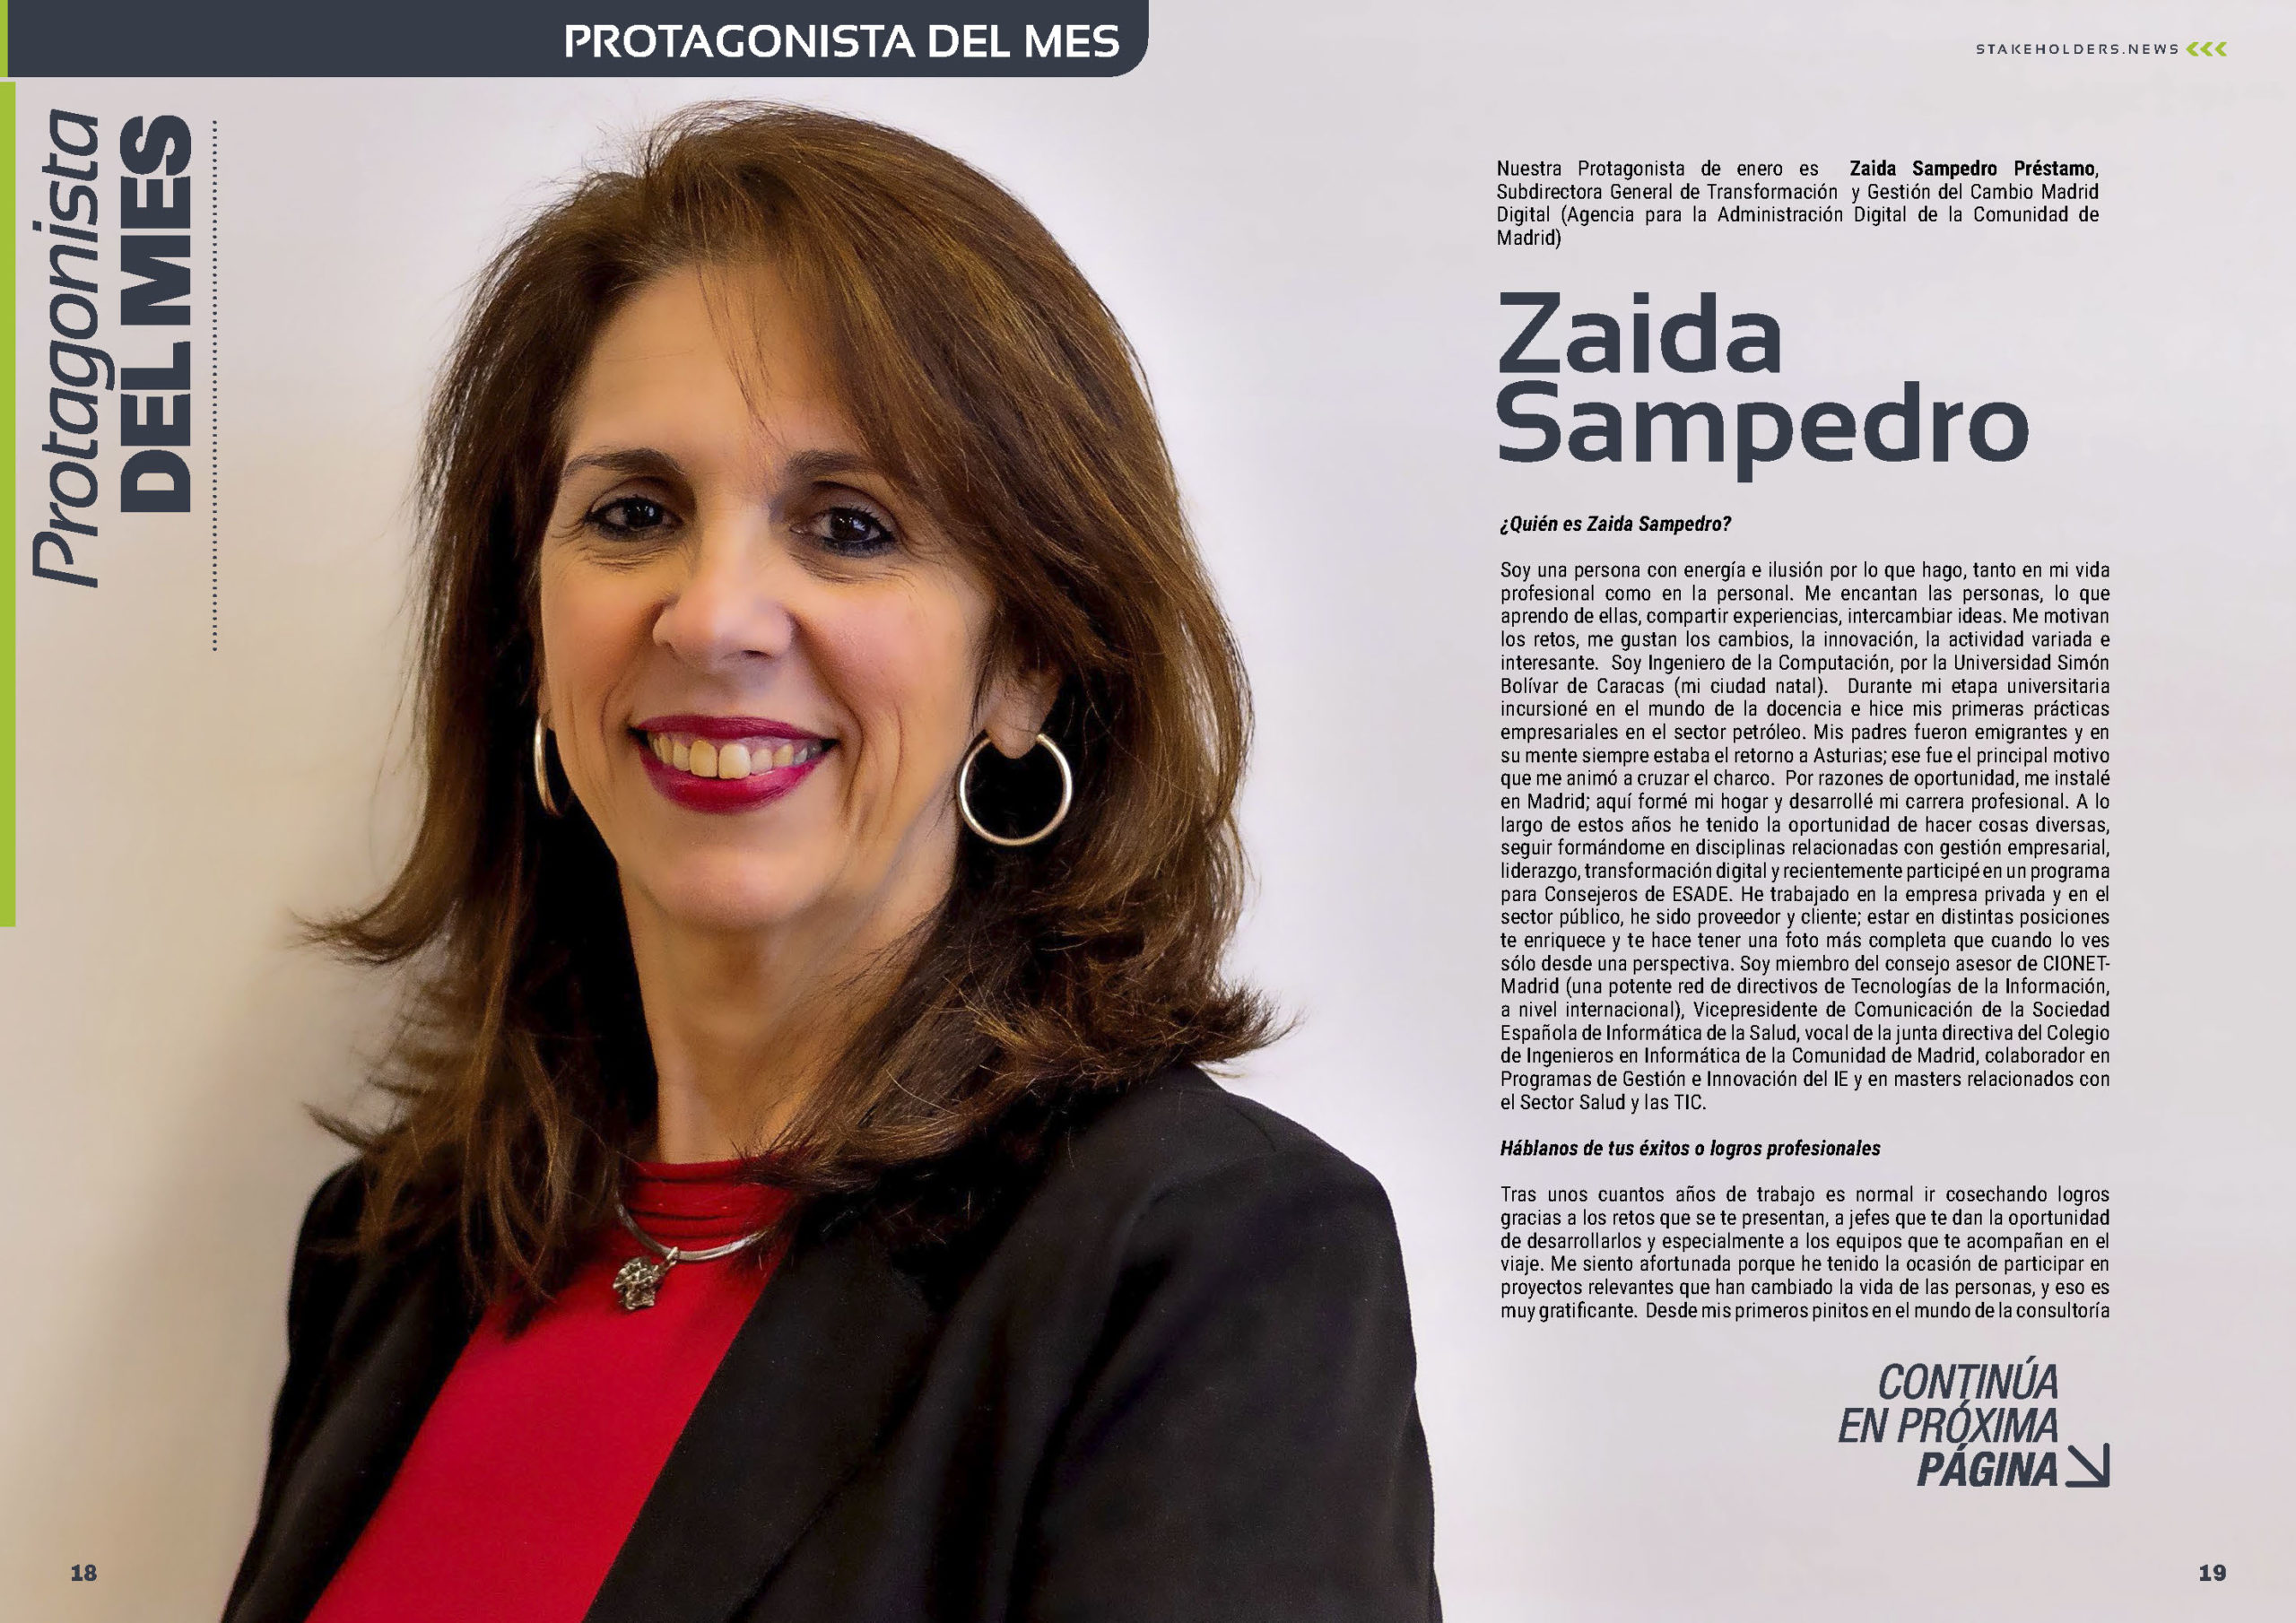 Zaida Sampedro es Protagonista del Mes en la edición de enero de la revista mensual Stakeholders.news La Revista Líder de la Alta Dirección y los Profesionales de Gobierno, Dirección y Gestión de Porfolios, Programas y Proyectos.